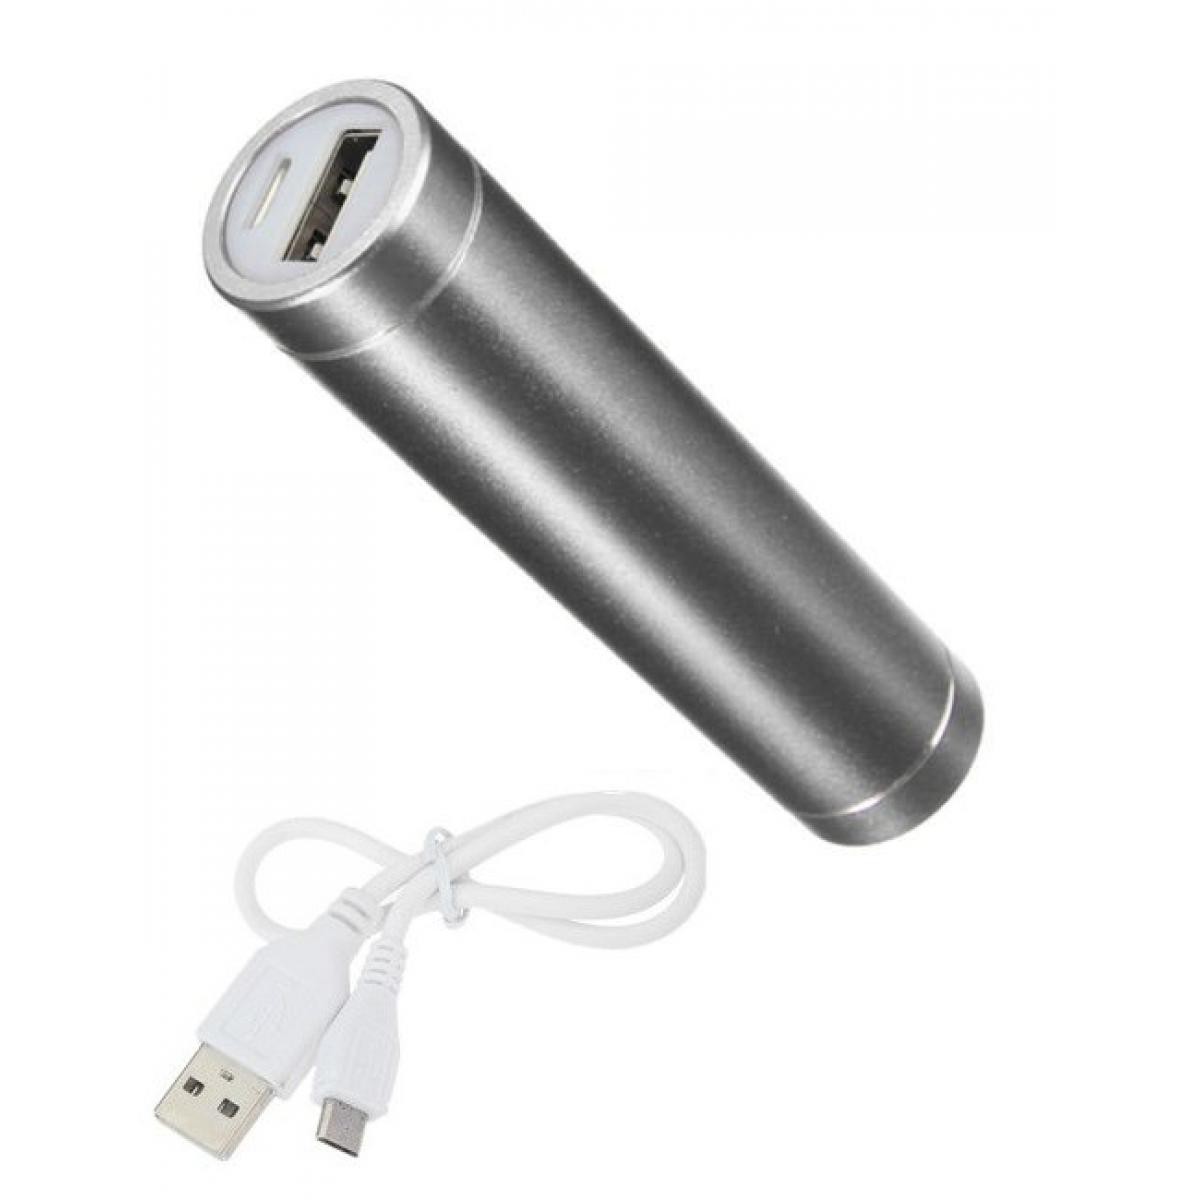 Shot - Batterie Chargeur Externe pour HUAWEI Mate 20 Pro Power Bank 2600mAh avec Cable USB/Mirco USB Secours Telephone (ARGENT) - Chargeur secteur téléphone